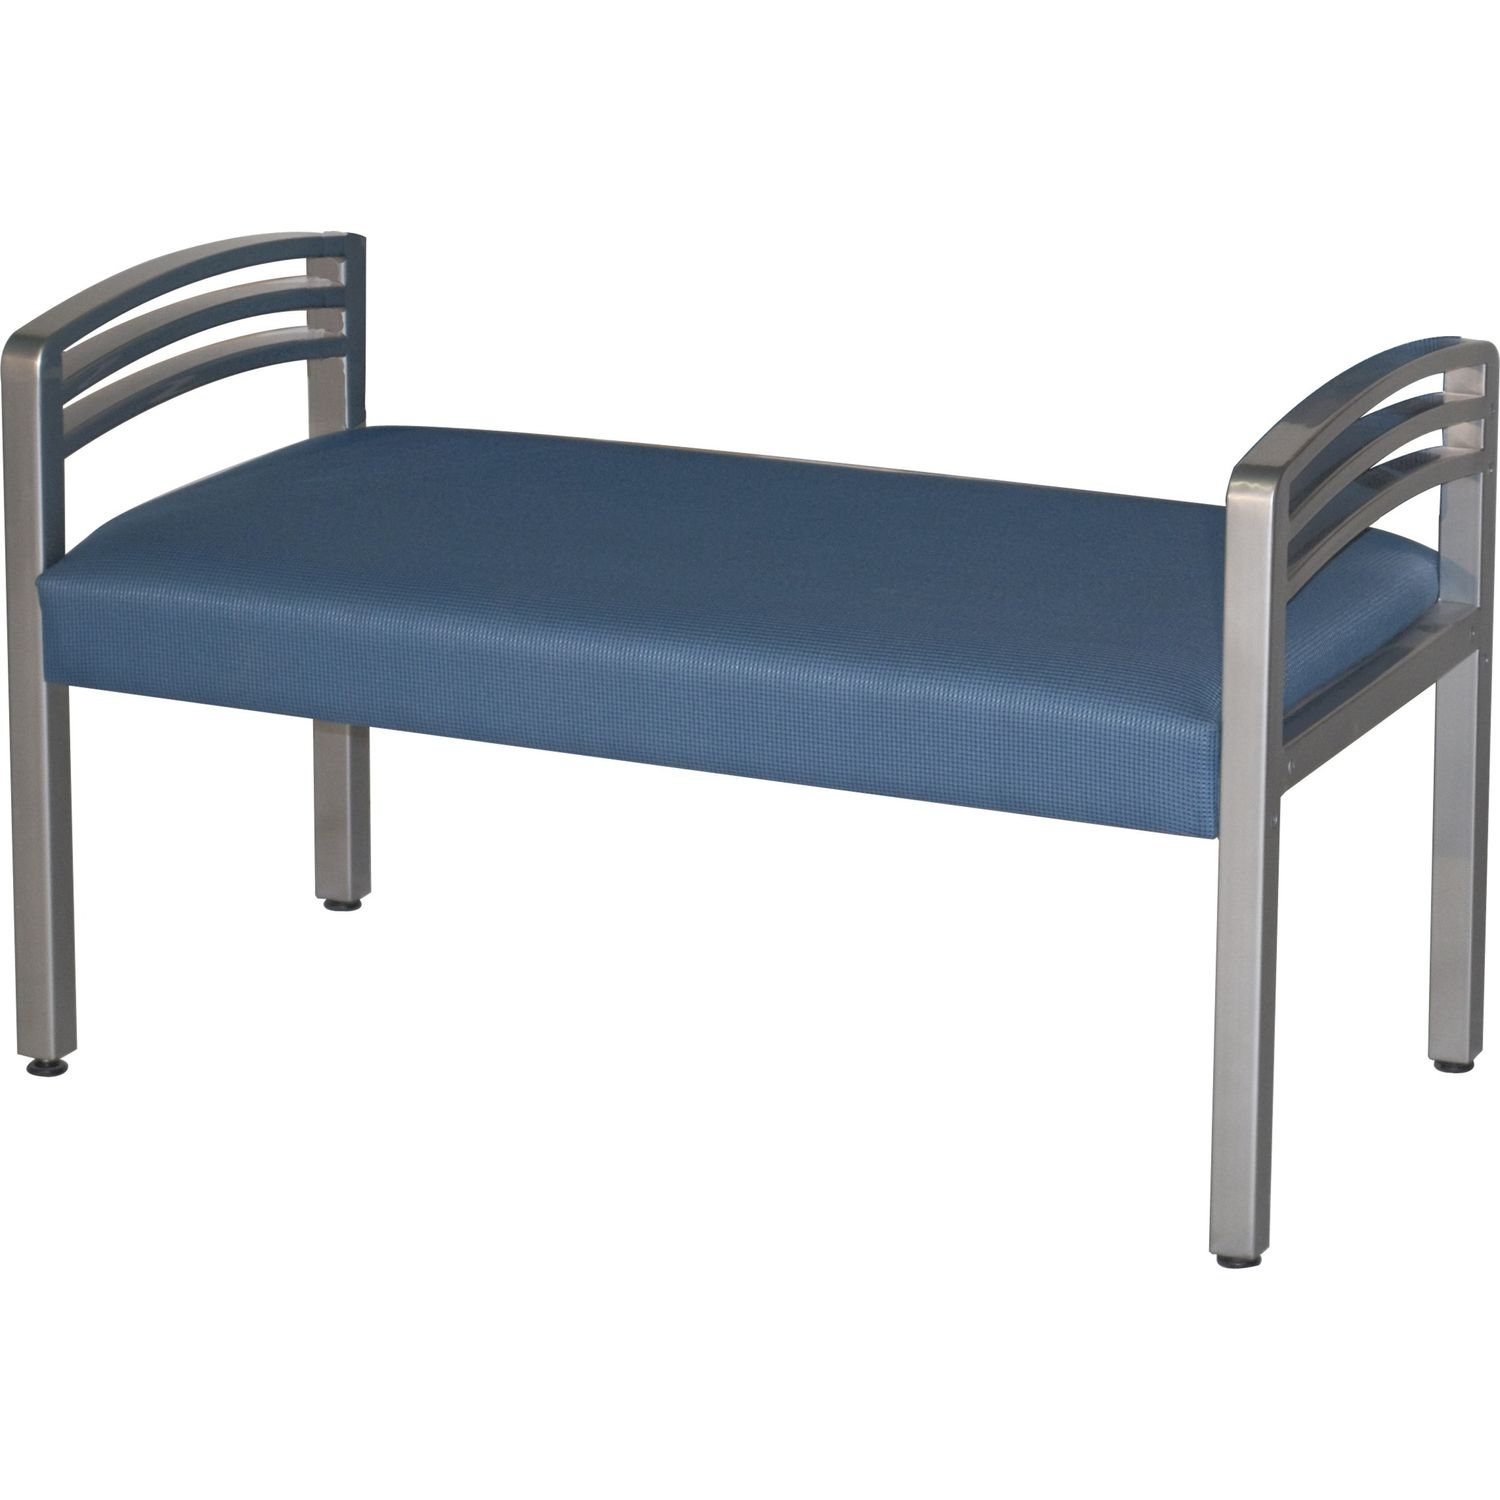 Trados 918MET Bench Free Evening Polyester Seat, Metal, Steel Frame, Four-legged Base, Silver Reflectra Metallic, 1 Each